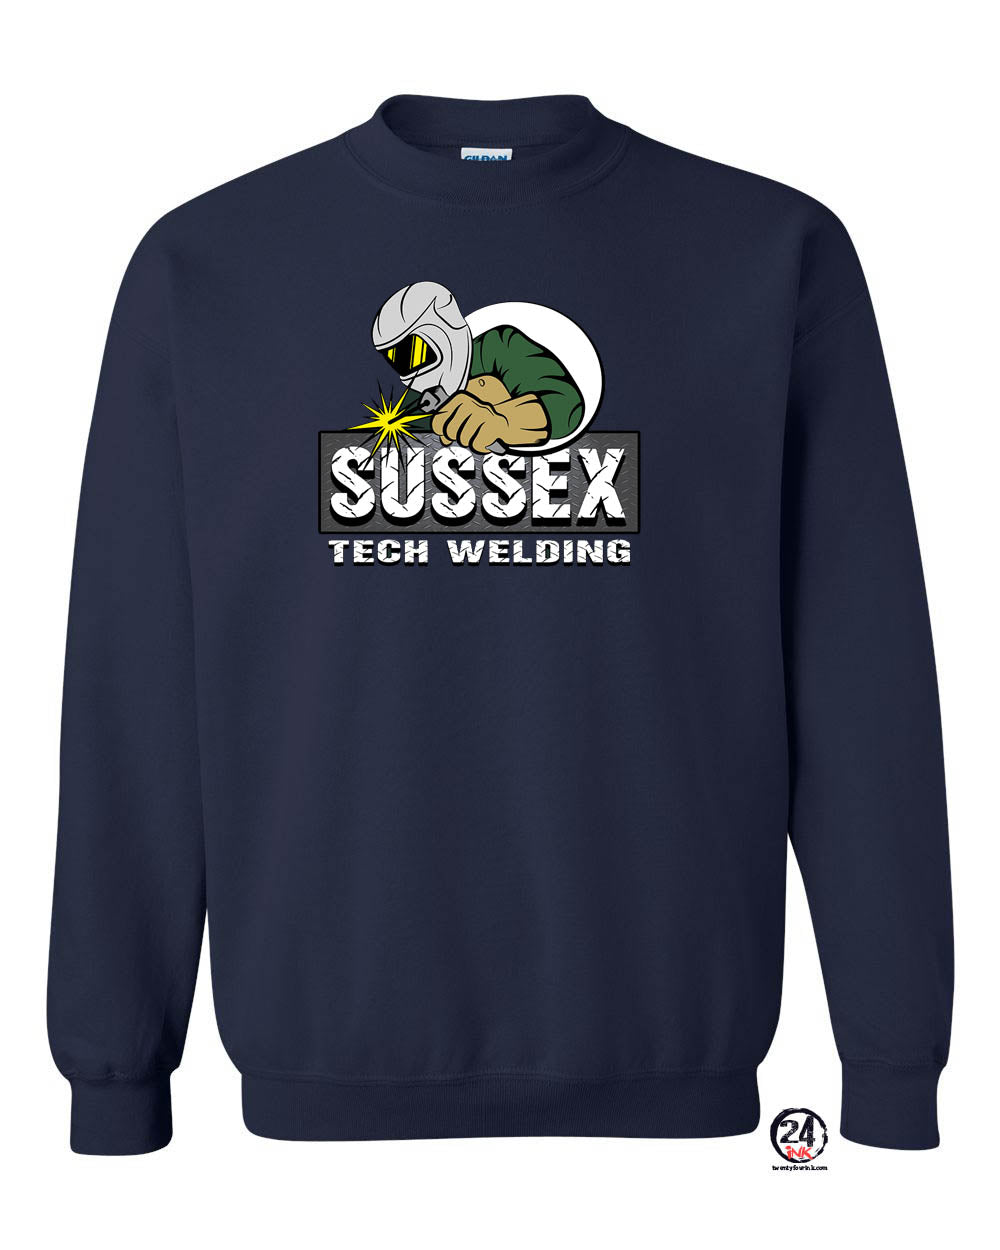 Sussex Tech Welding Design 2 non hooded sweatshirt